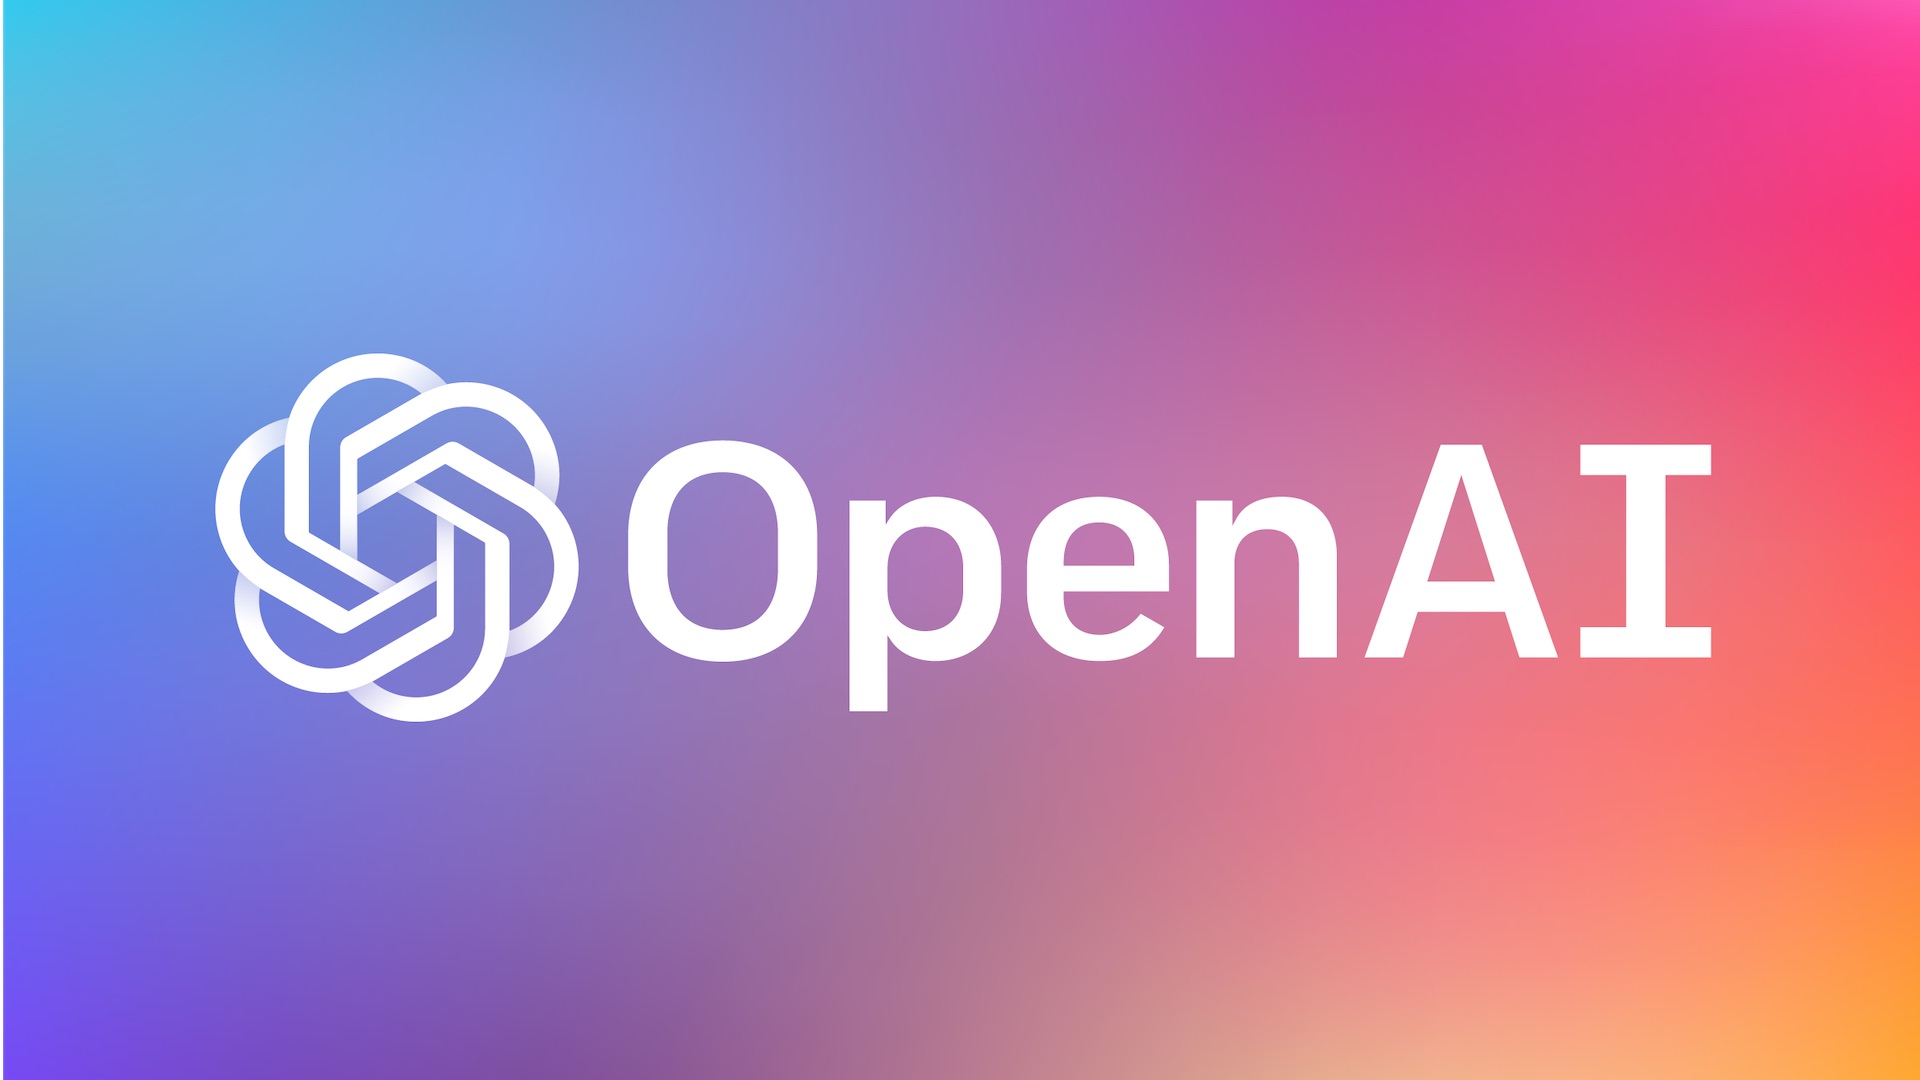 OpenAI a créé GPT-3 un modèle d'IA qui inquiète par ses potentiels usages malveillants.  // Source : OpenAI